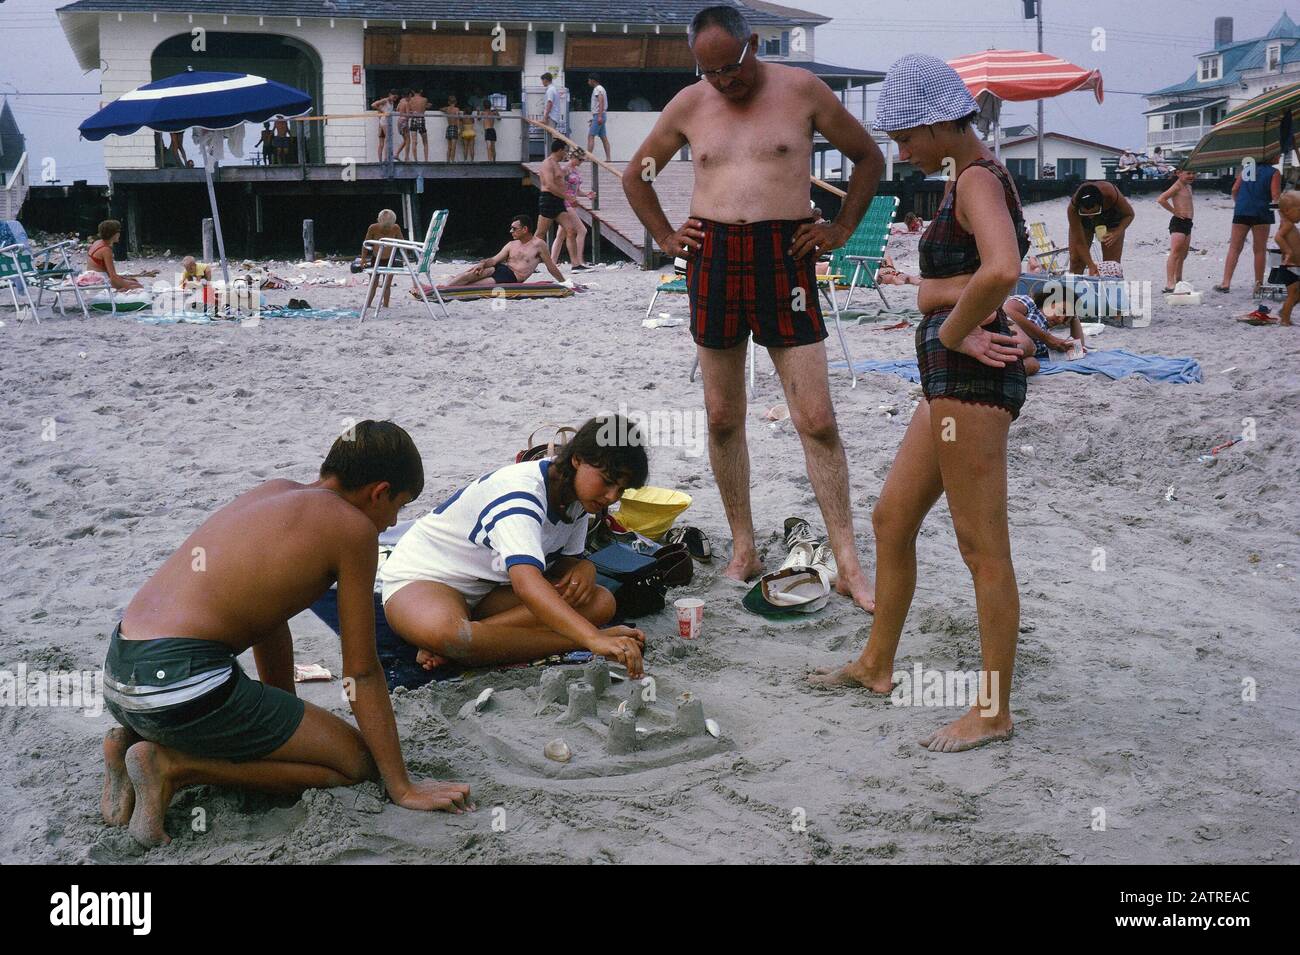 Photographie vernaculaire prise sur une transparence de film analogique de 35 mm, considérée comme représentant des personnes sur la plage pendant la journée, 1970. Les principaux sujets/objets détectés sont Plage et Groupe. () Banque D'Images